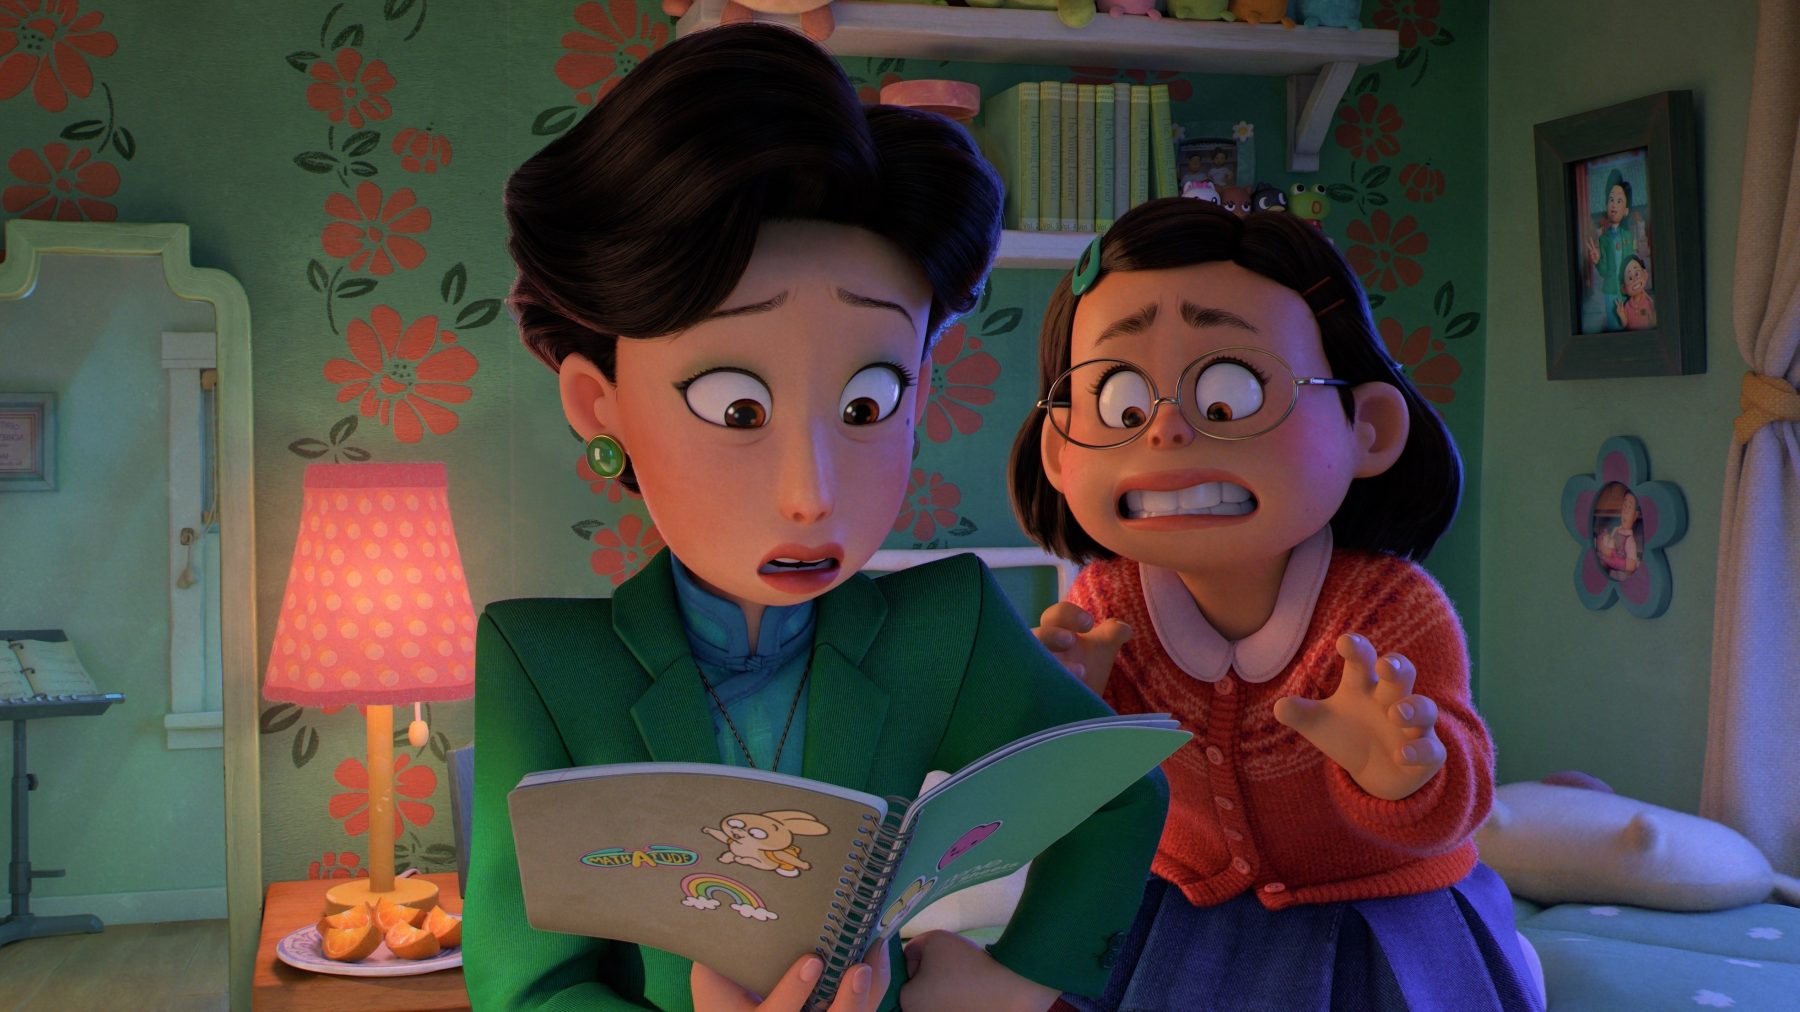 Ouders vallen over maandverband in Pixar-film 'Turning Red': 'Ongepast'